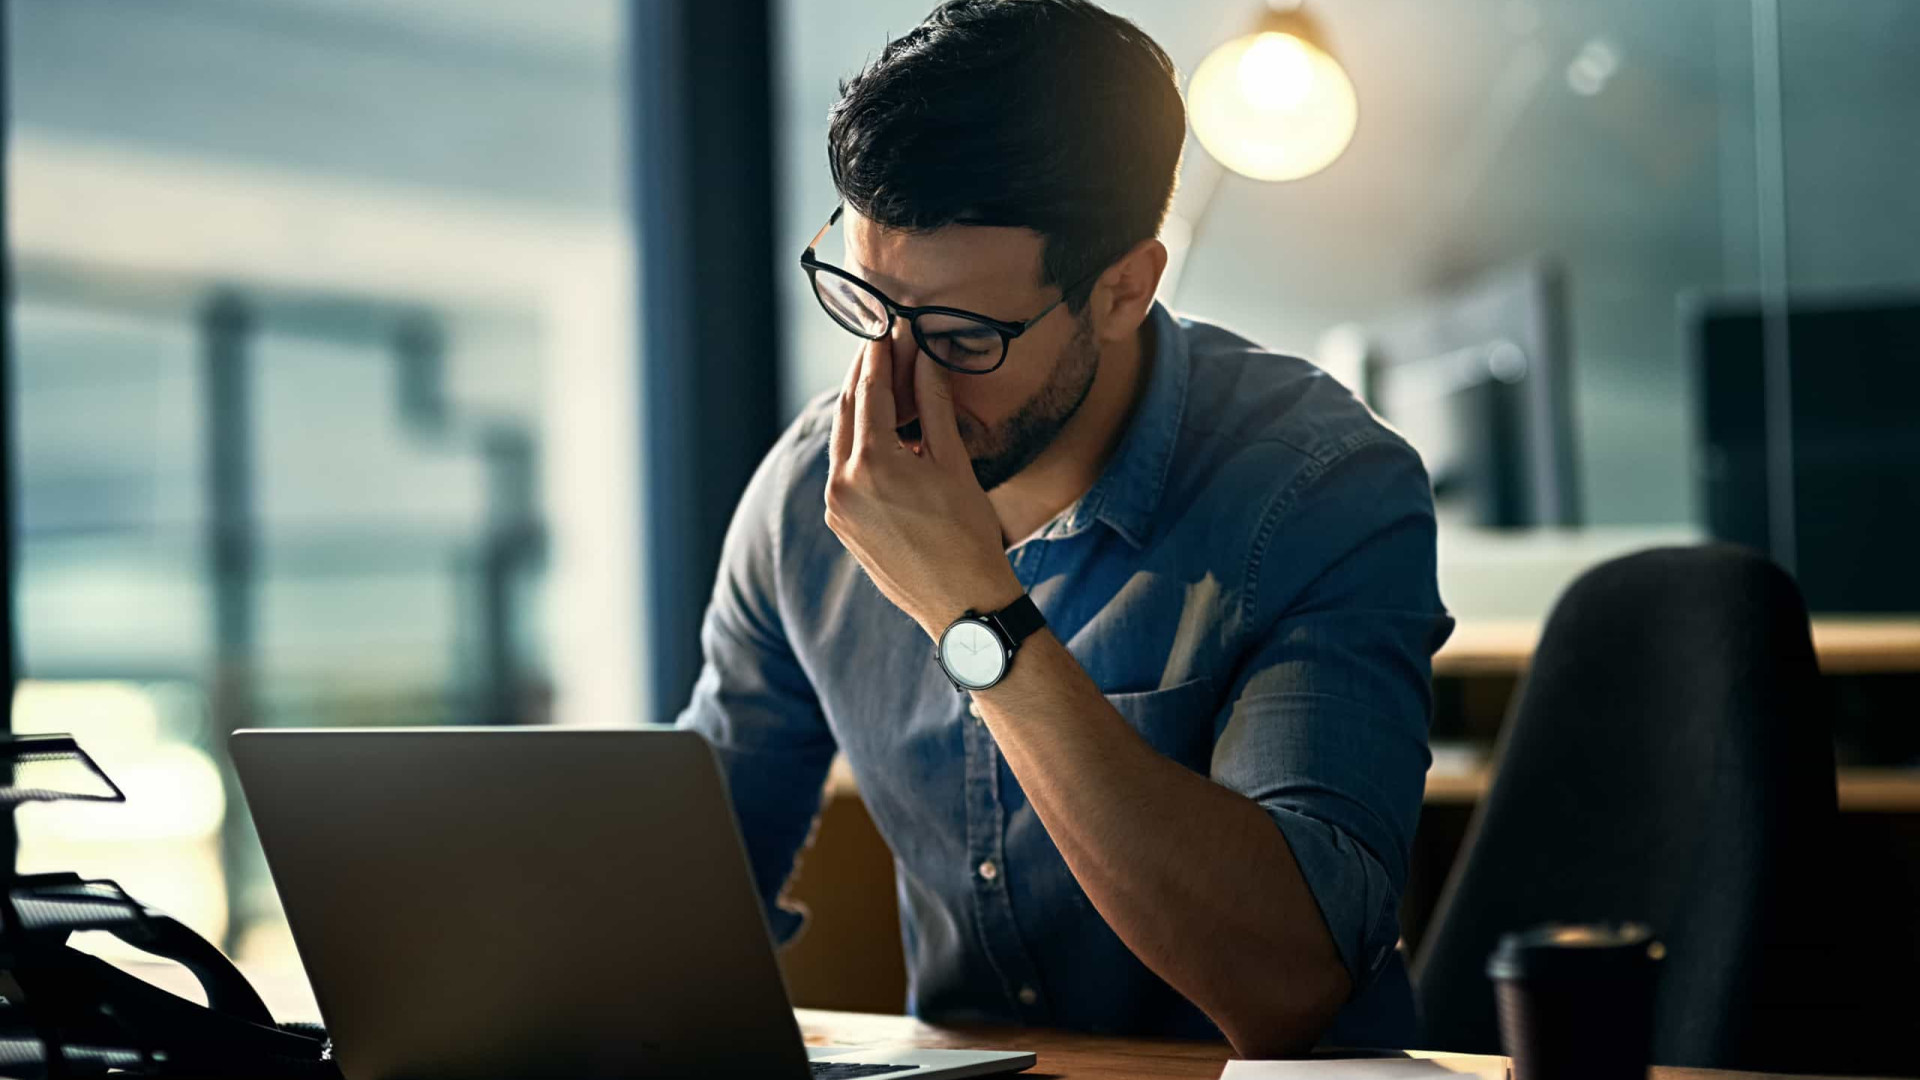 Análise de dados indica limites de trabalho para prevenir burnout